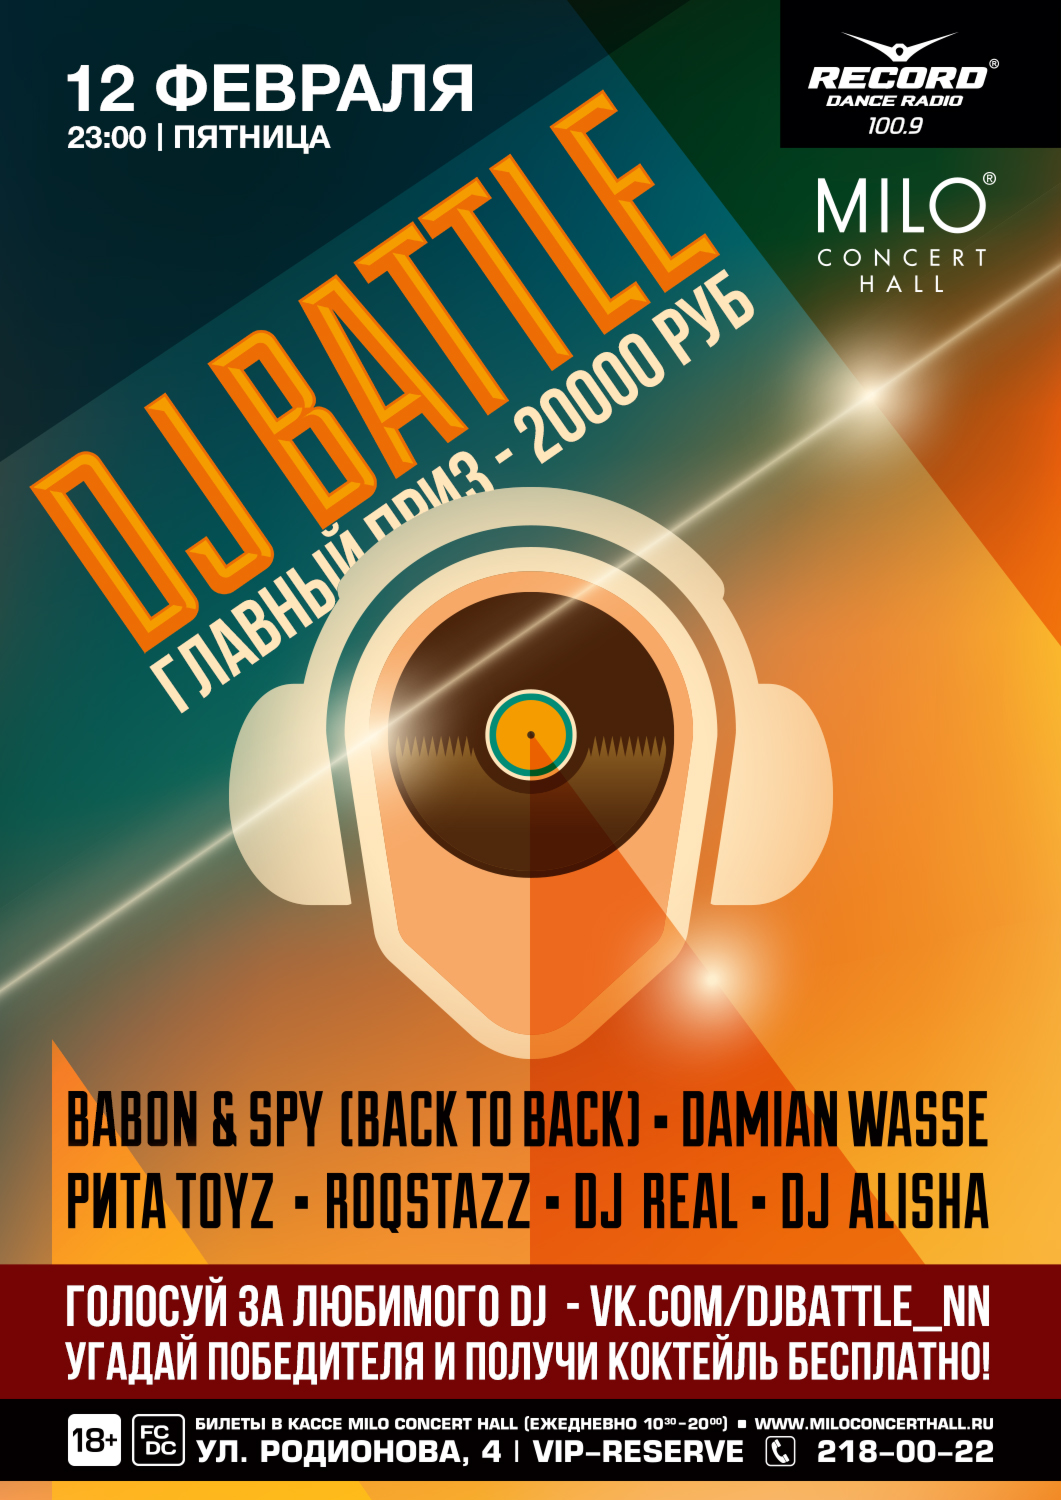 DJ Battle пройдет в MILO CONCERT HALL 12 февраля